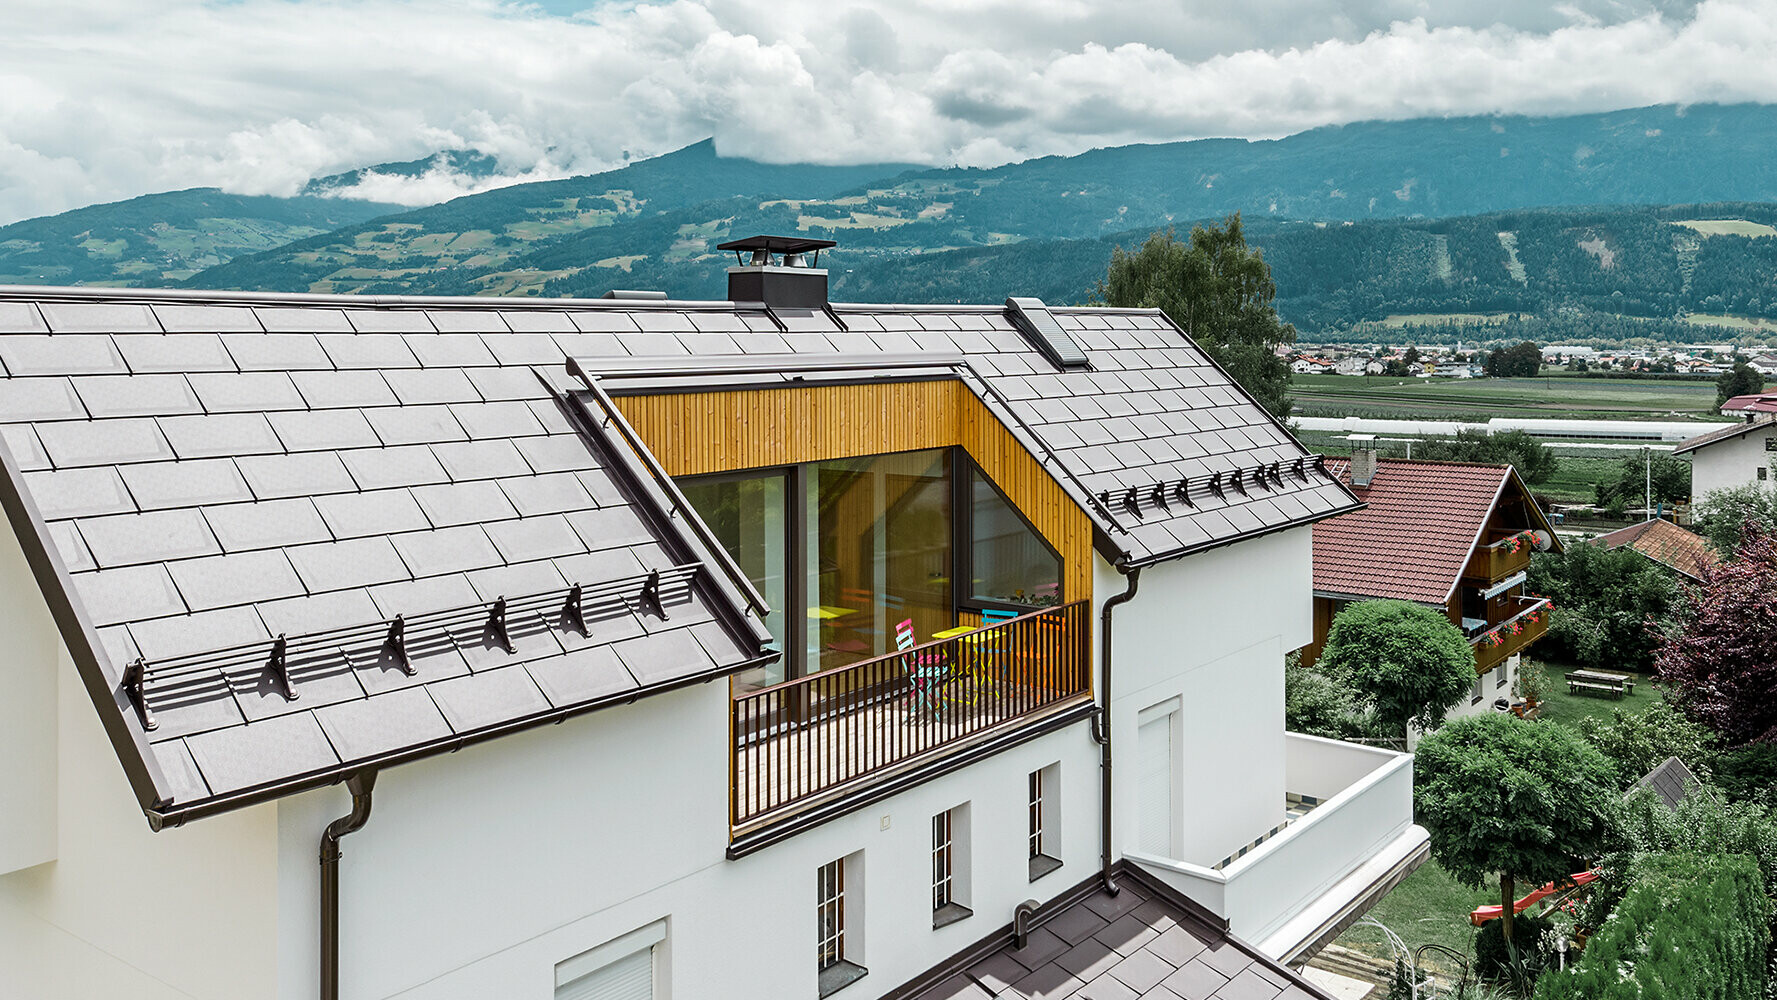 Bâtiment d’habitation recouvert de tuiles en aluminium R.16 couleur brun noisette de PREFA présentant un grand balcon et une façade en crépi clair.